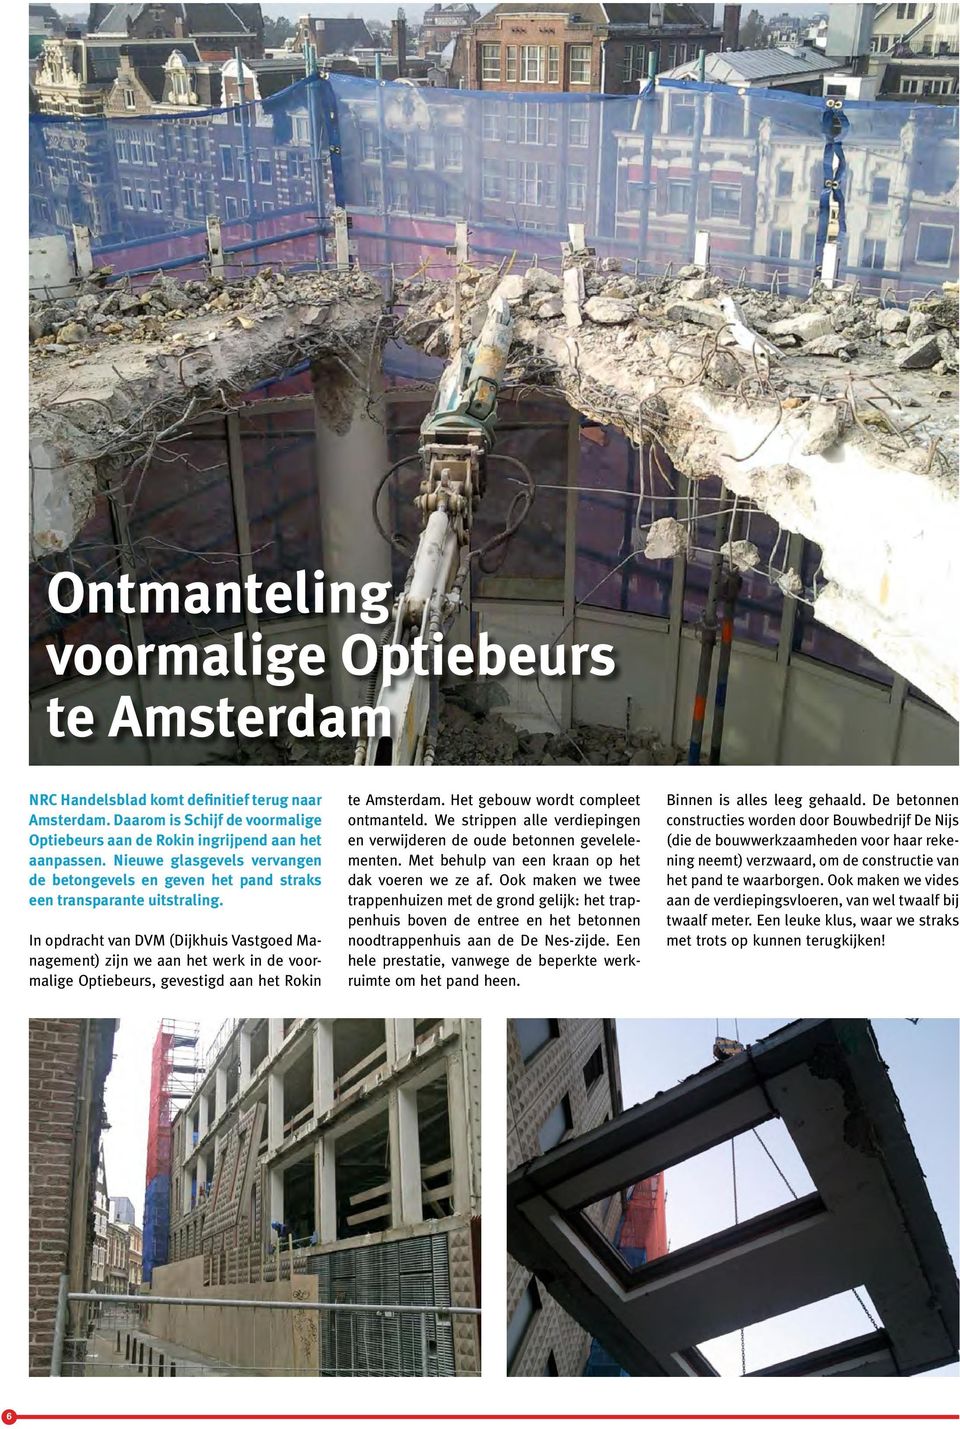 In opdracht van DVM (Dijkhuis Vastgoed Management) zijn we aan het werk in de voormalige Optiebeurs, gevestigd aan het Rokin te Amsterdam. Het gebouw wordt compleet ontmanteld.